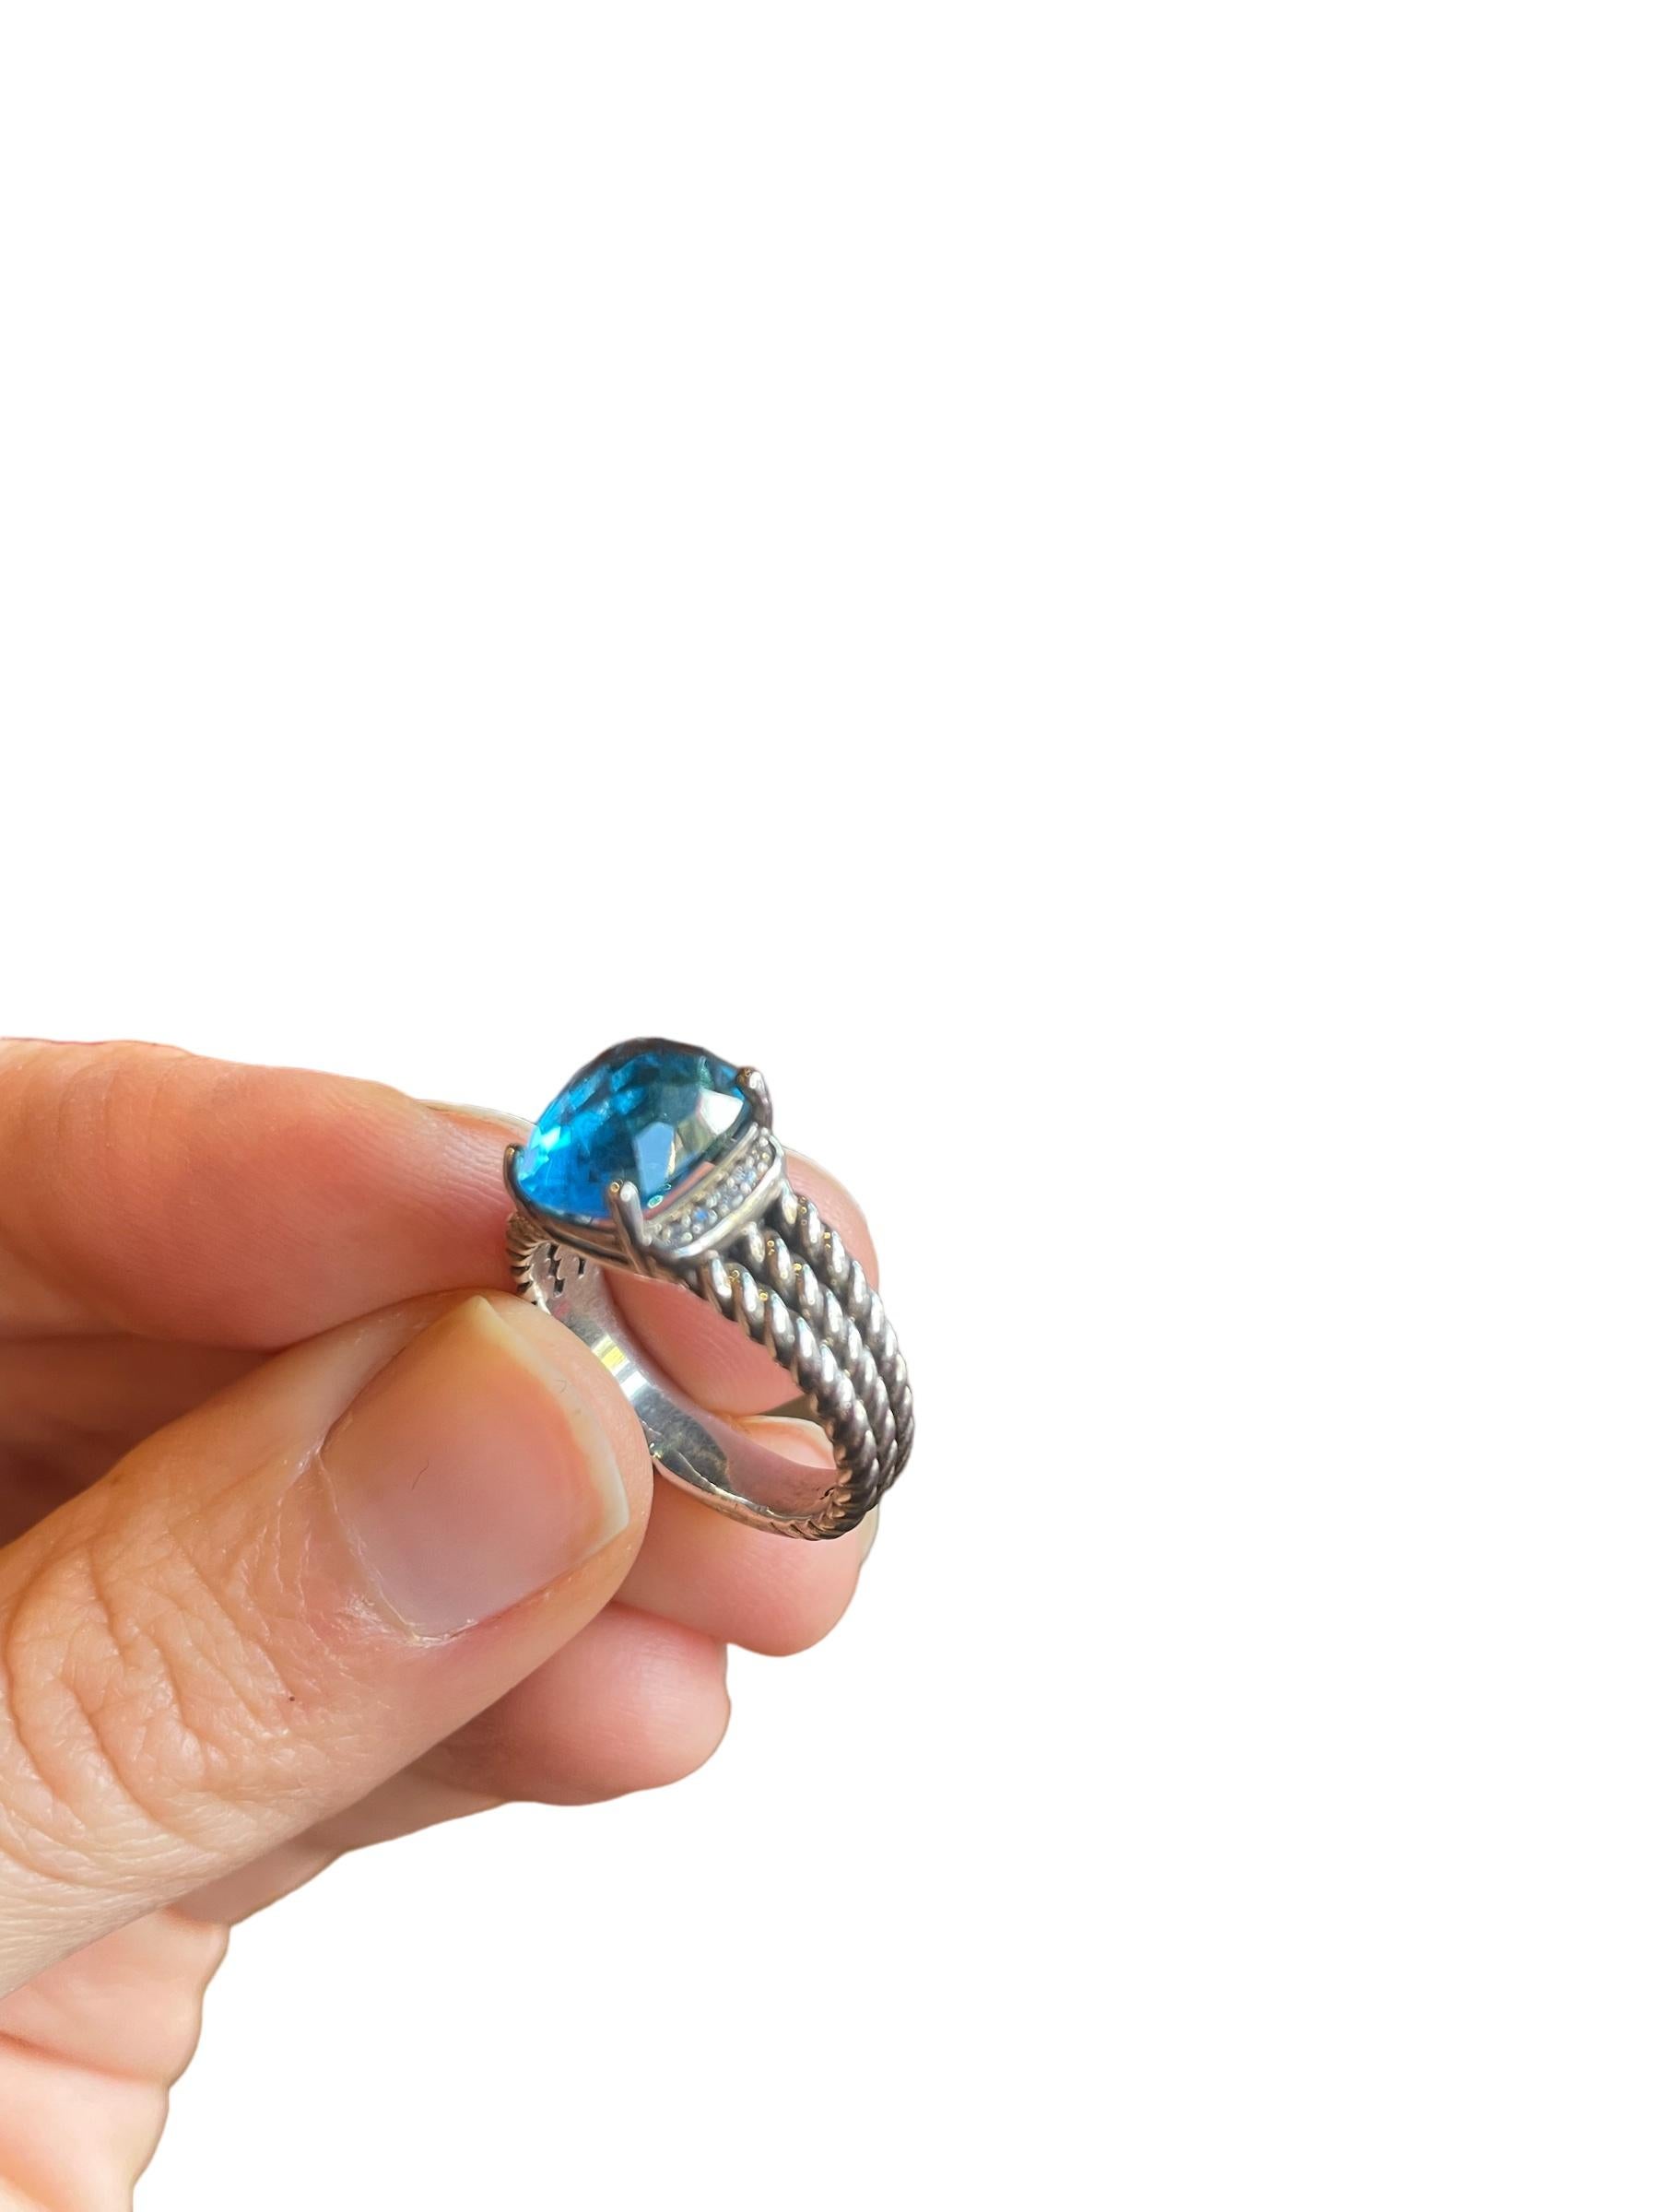 david yurman blue topaz ring